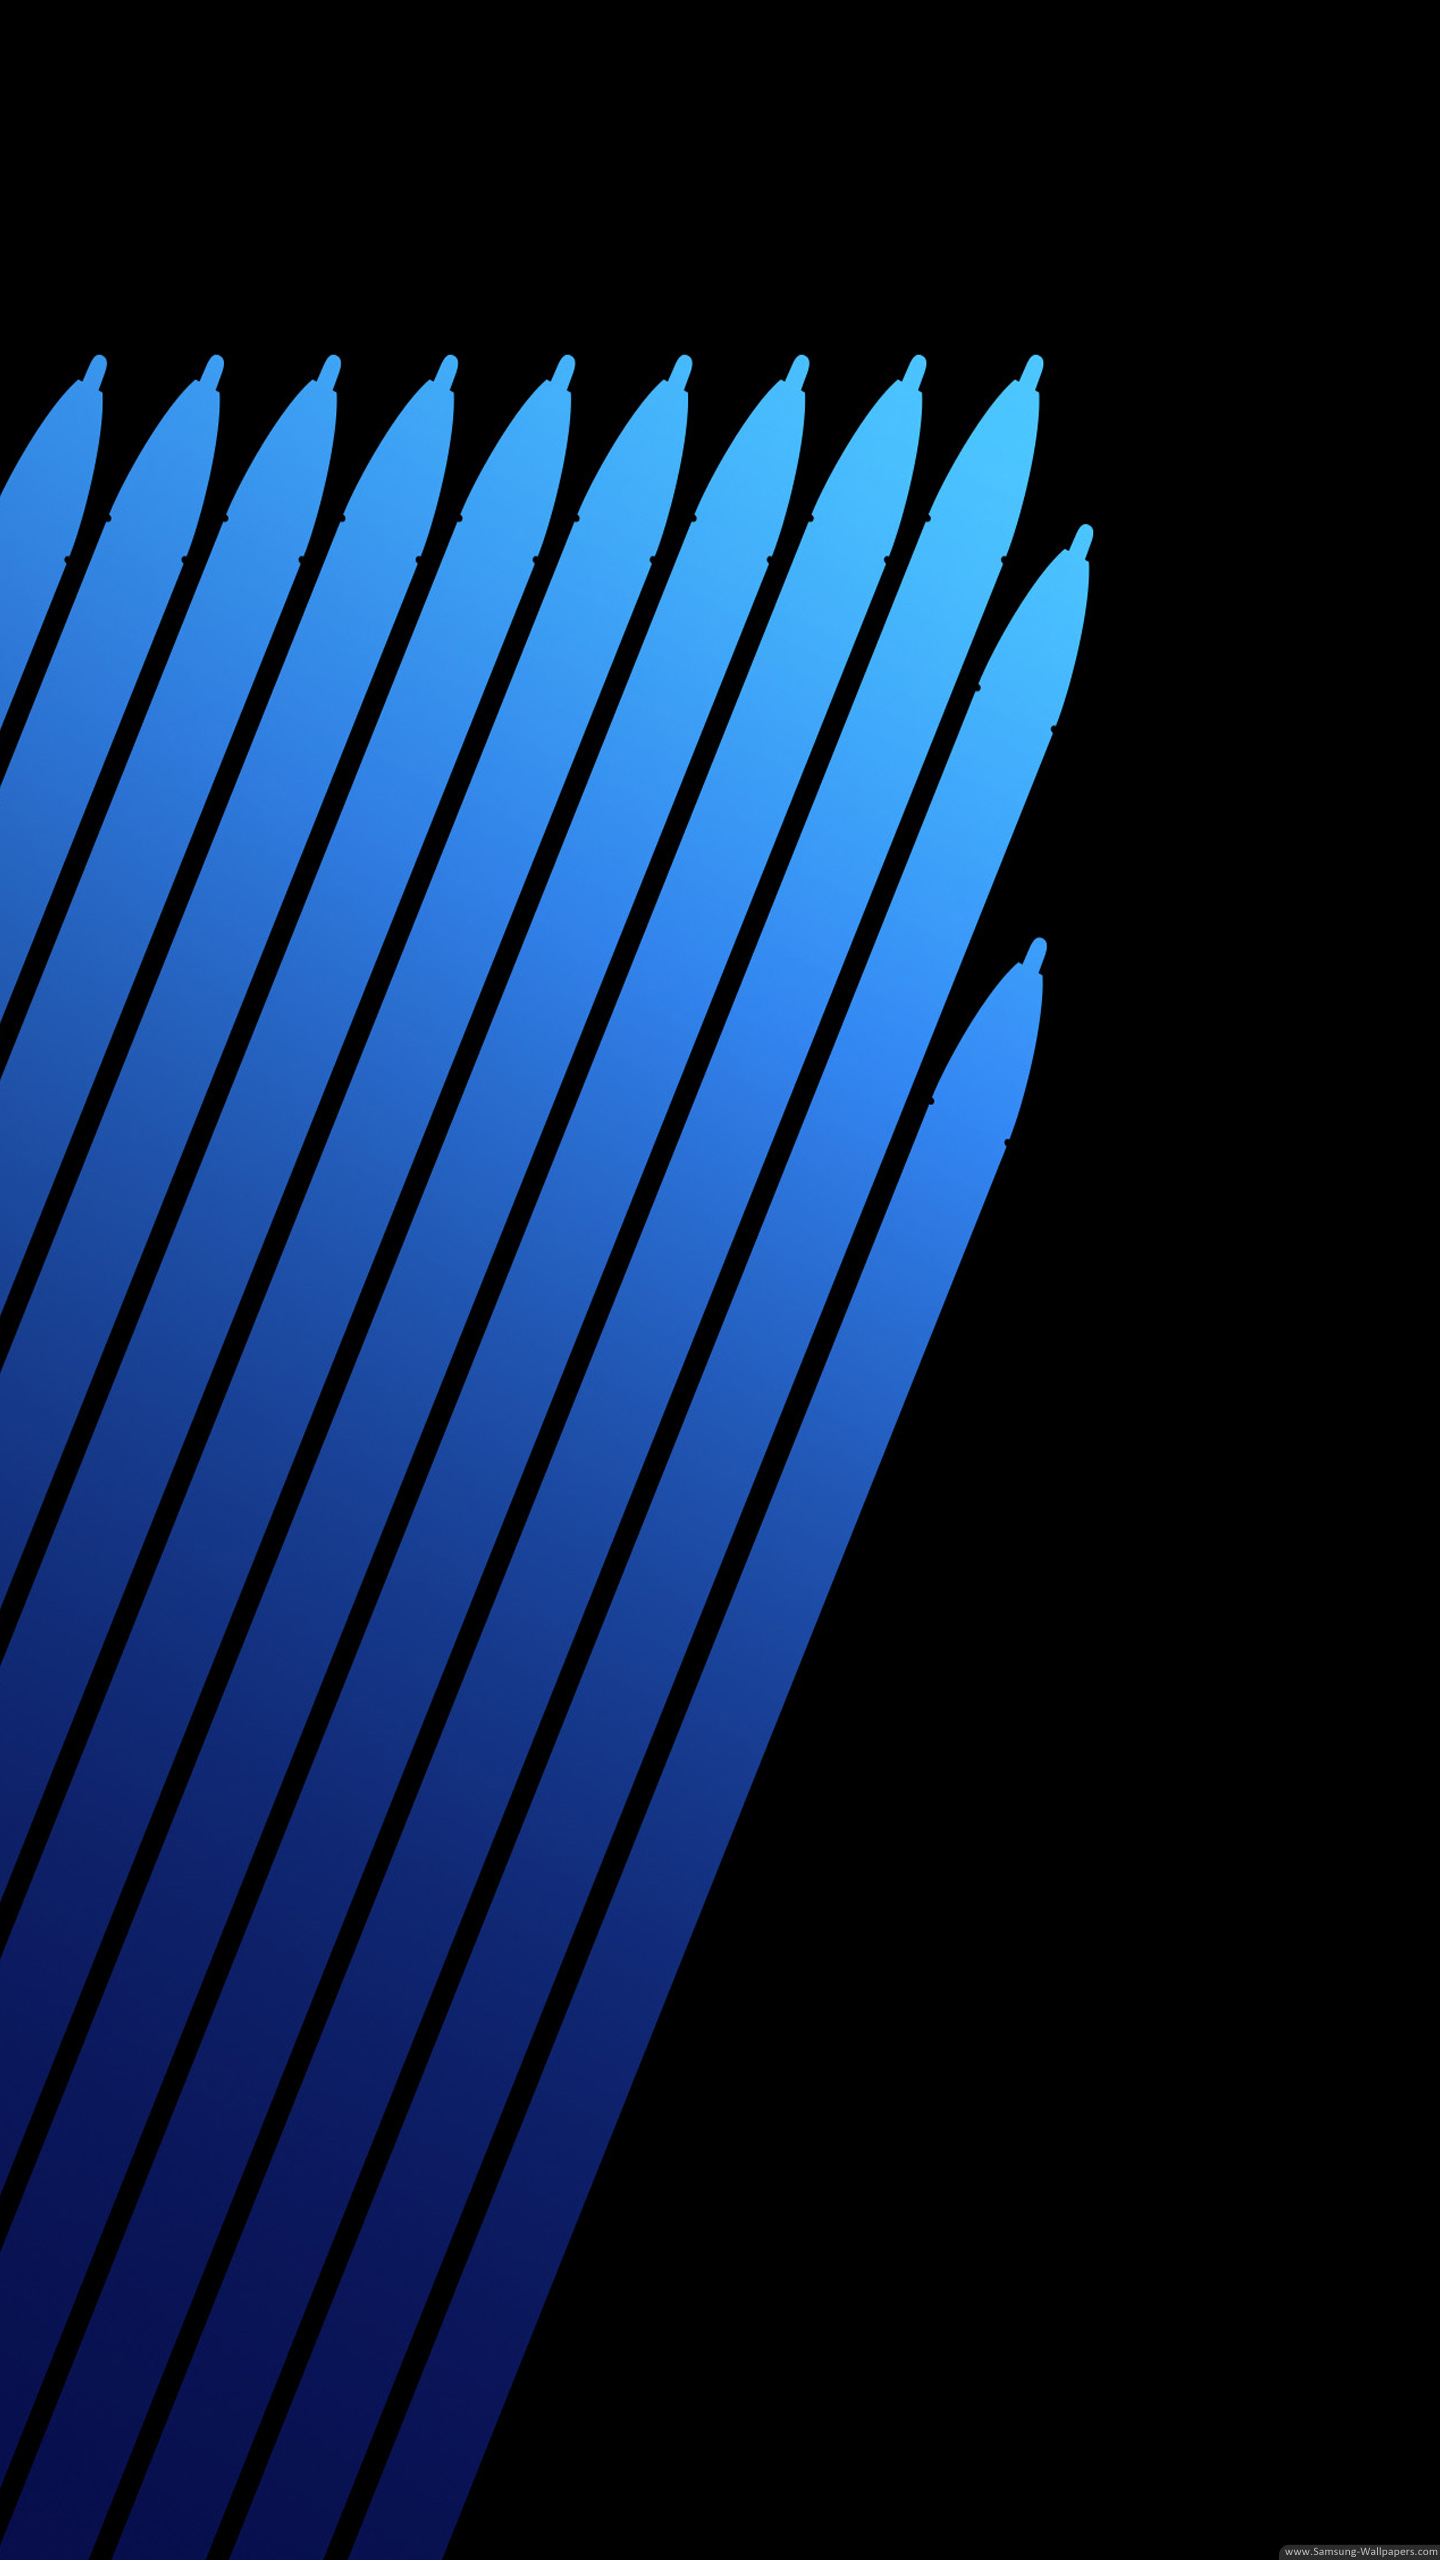 갤럭시 노트 7 재고 배경 화면,푸른,짙은 청록색,강청색,검정,빛